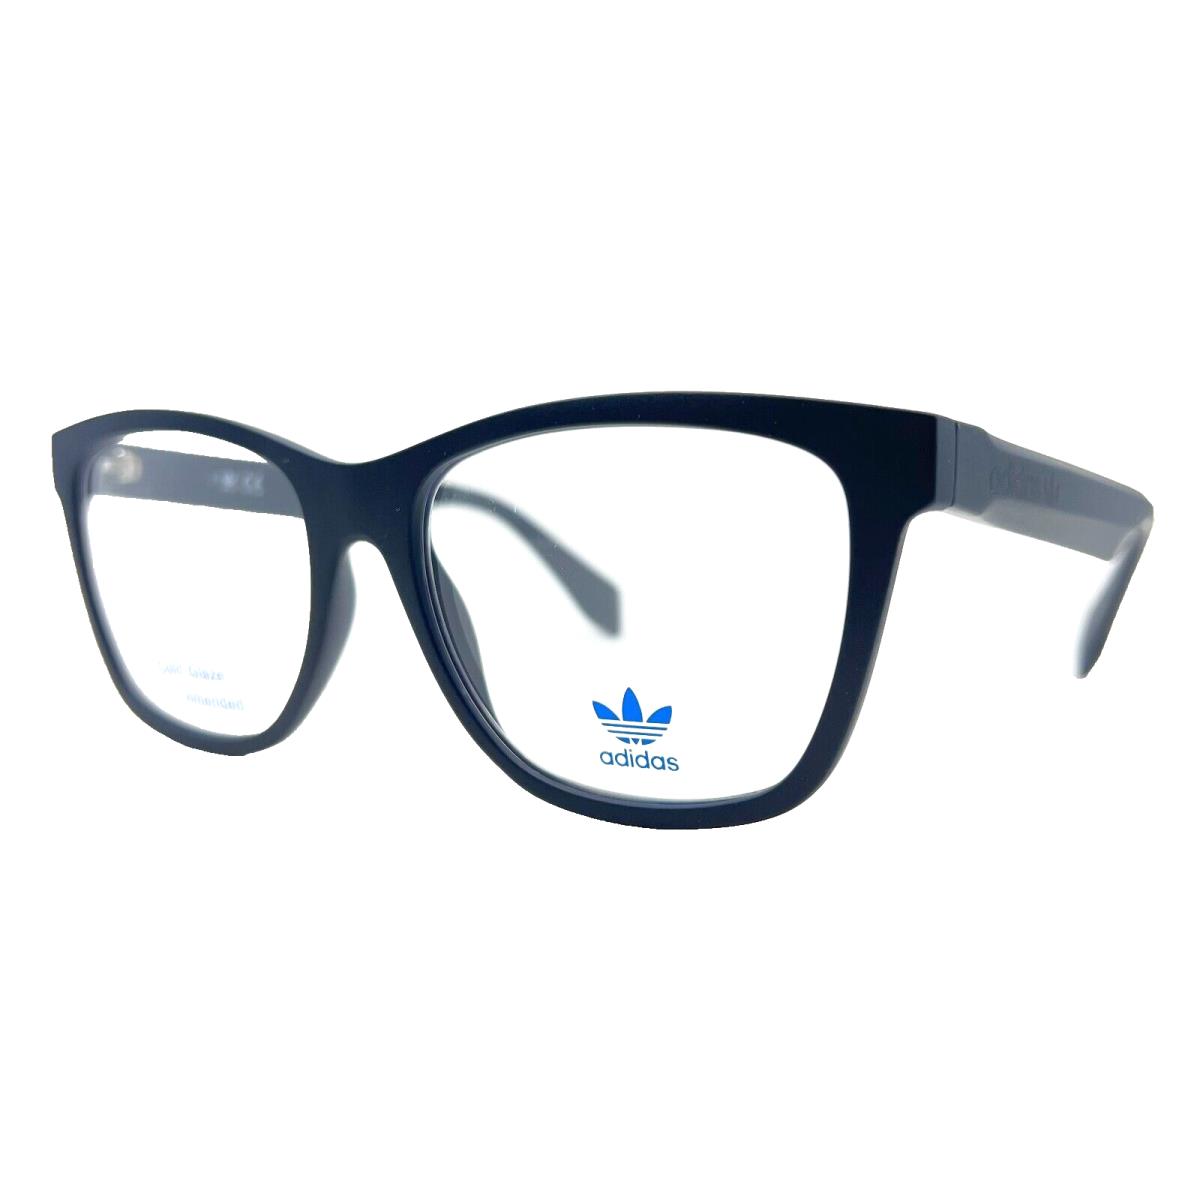 Adidas Originals - OR5025 092 54/16/145 - Blue - Eyeglasses Case - Frame: